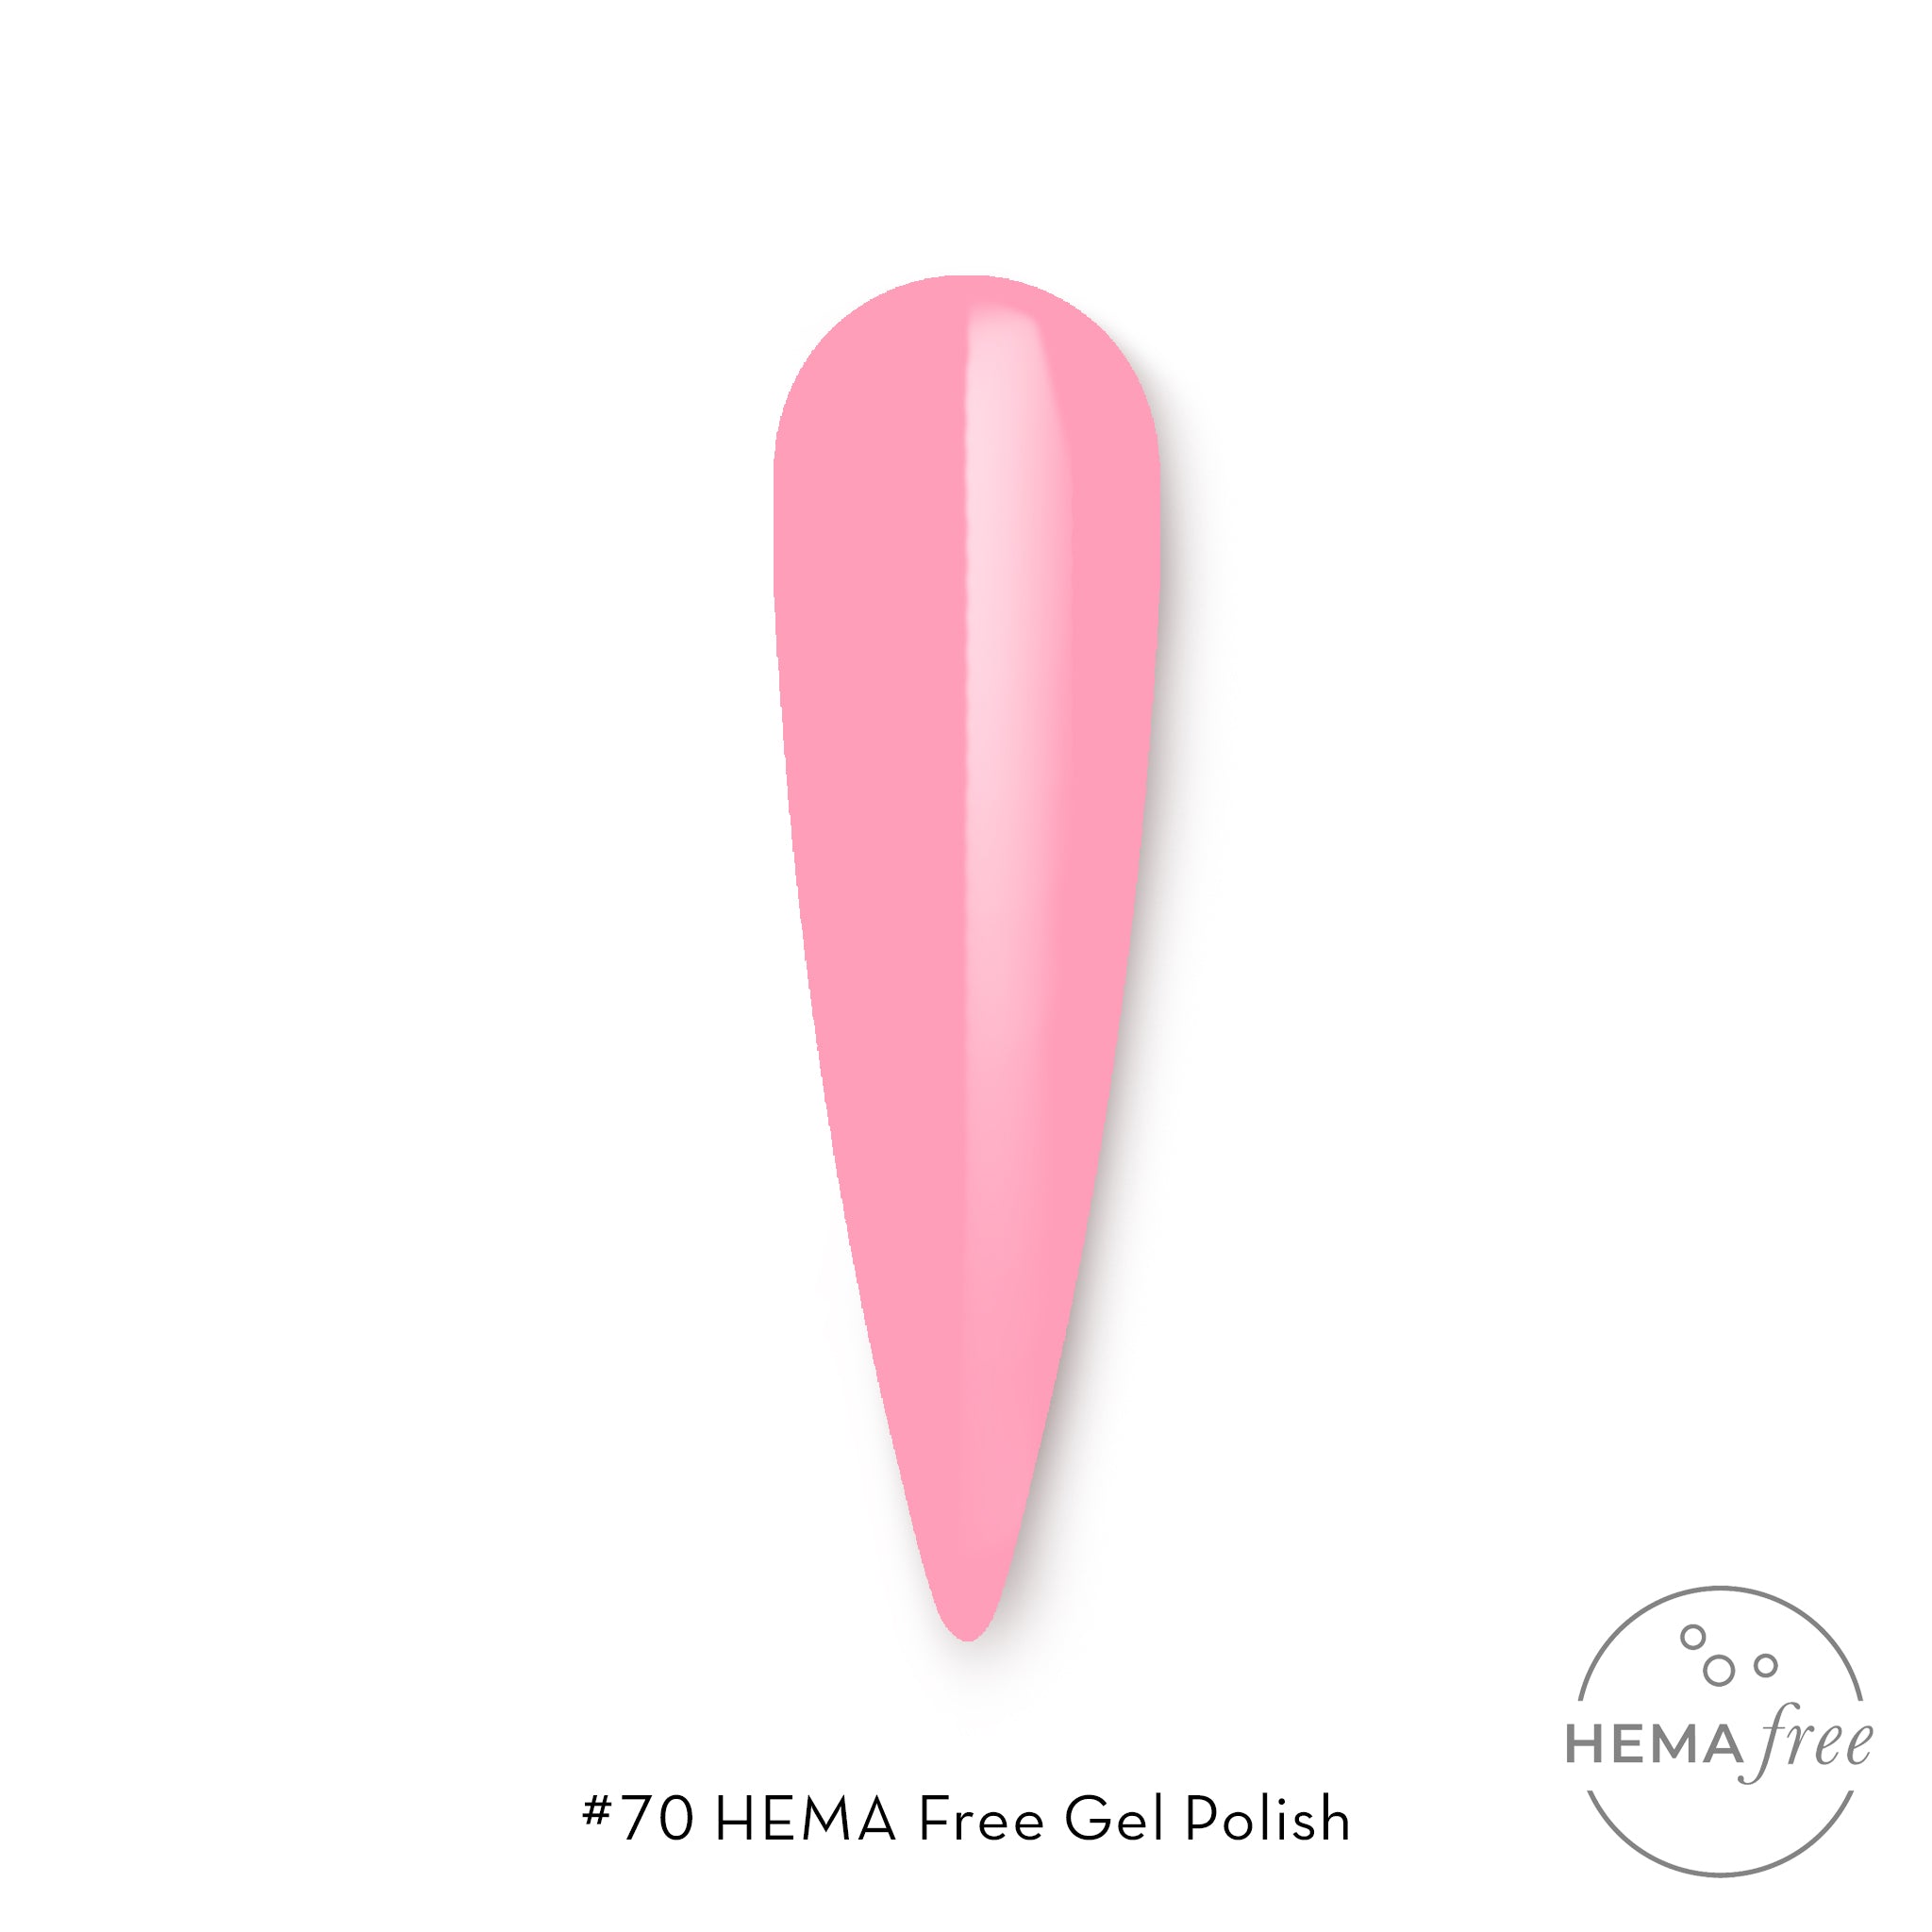 Fuzion Fortify - HEMA Free - 70 - Pastel - Creata Beauty - Professional Beauty Products